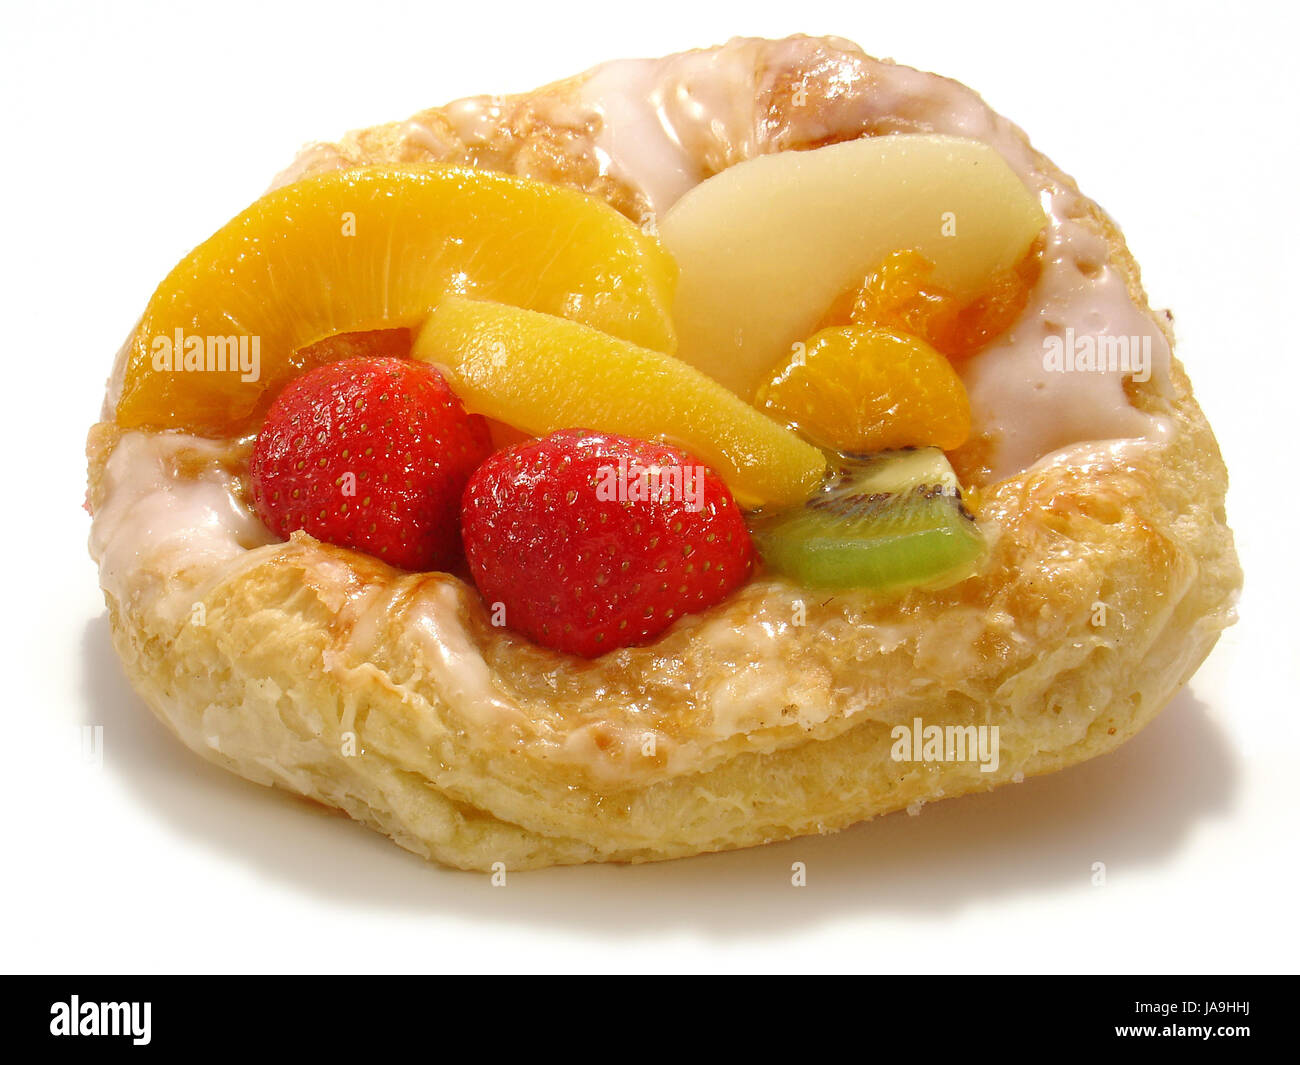 Obst zu plündern - Früchtekuchen Stockfoto